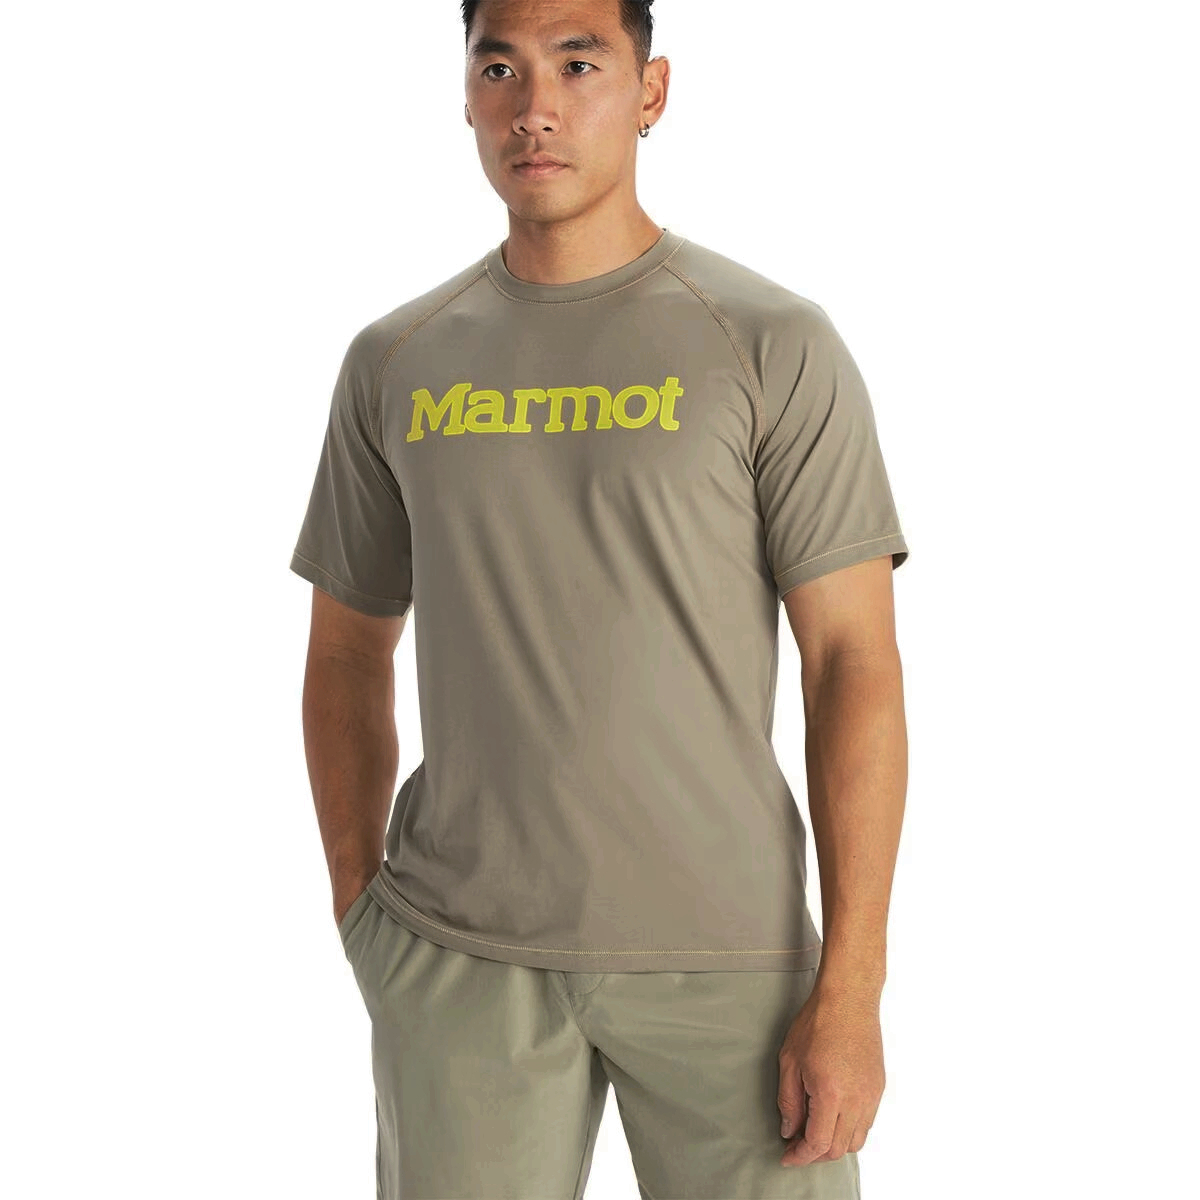 海淘正品Marmot Windridge美国土拨鼠男弹性防晒UPF50速干短袖T恤